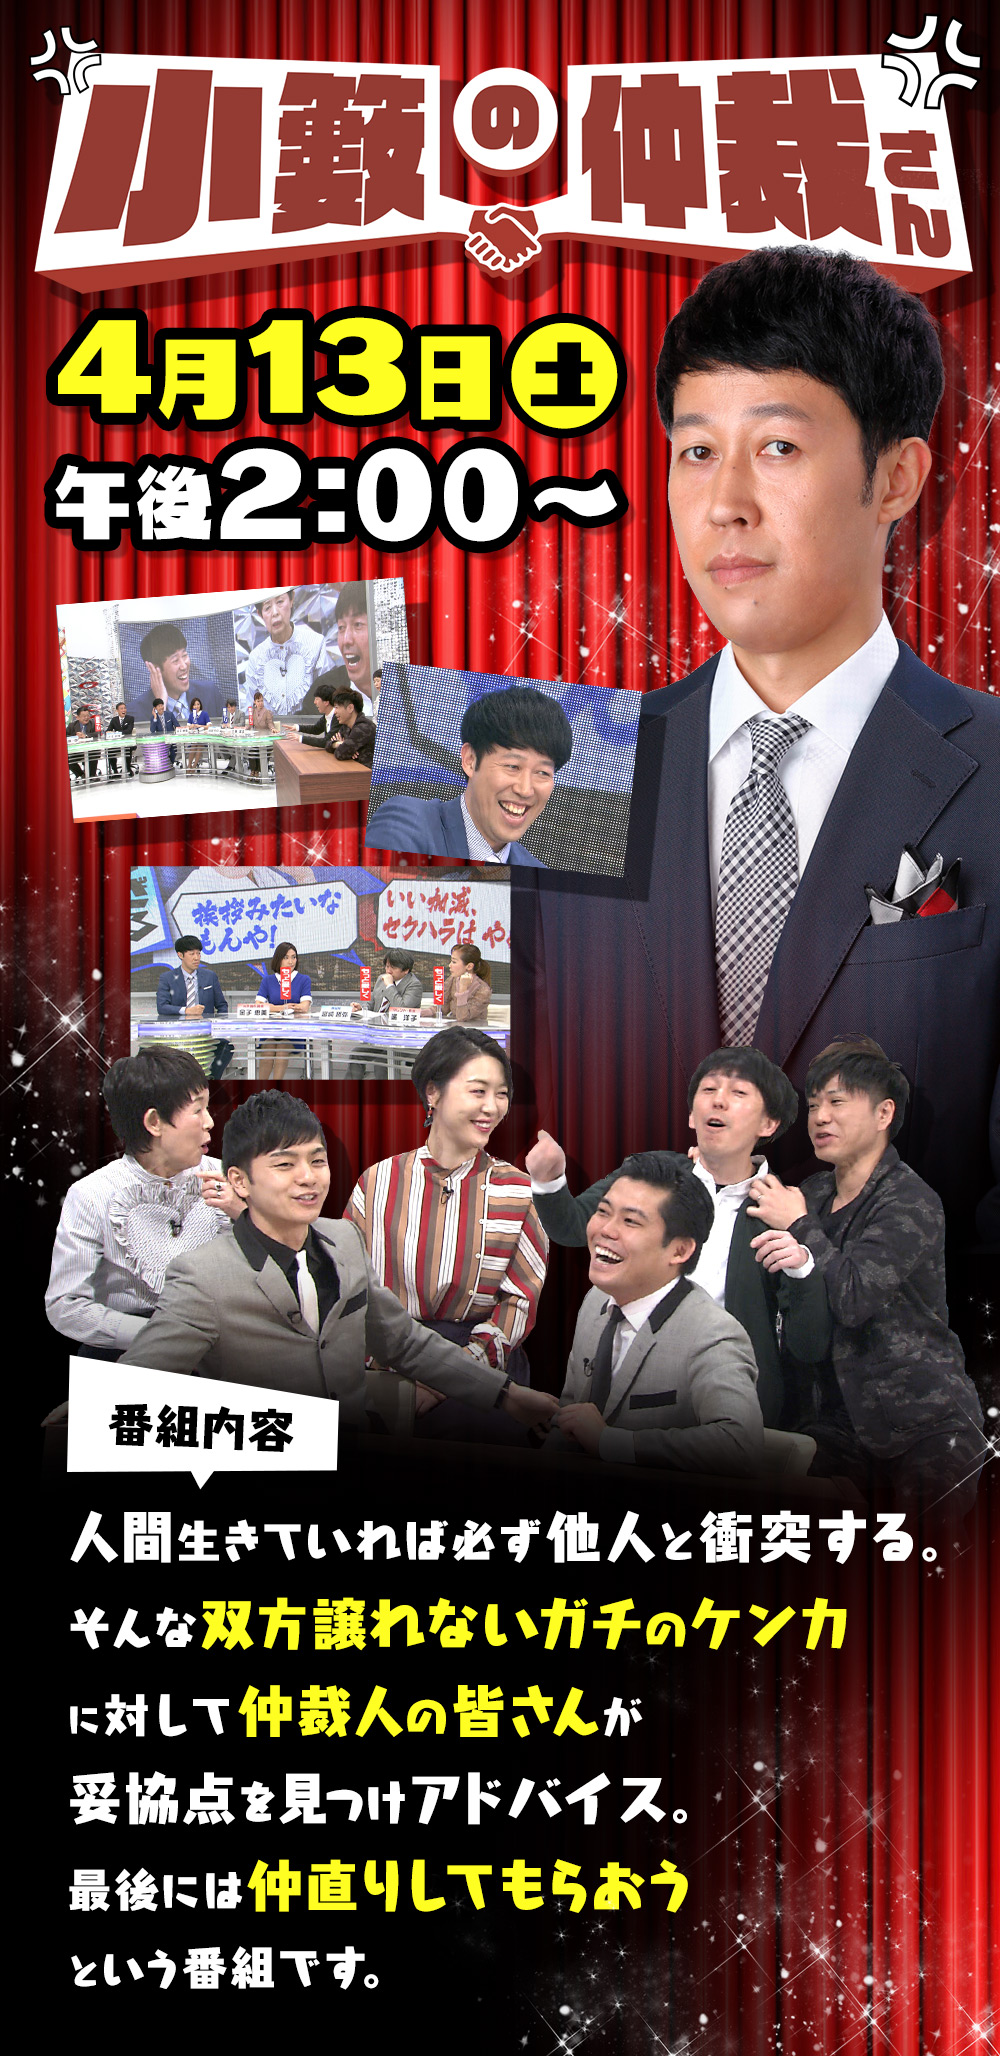 「小籔の仲裁さん」は2019年4月13日(土)午後2時放送！